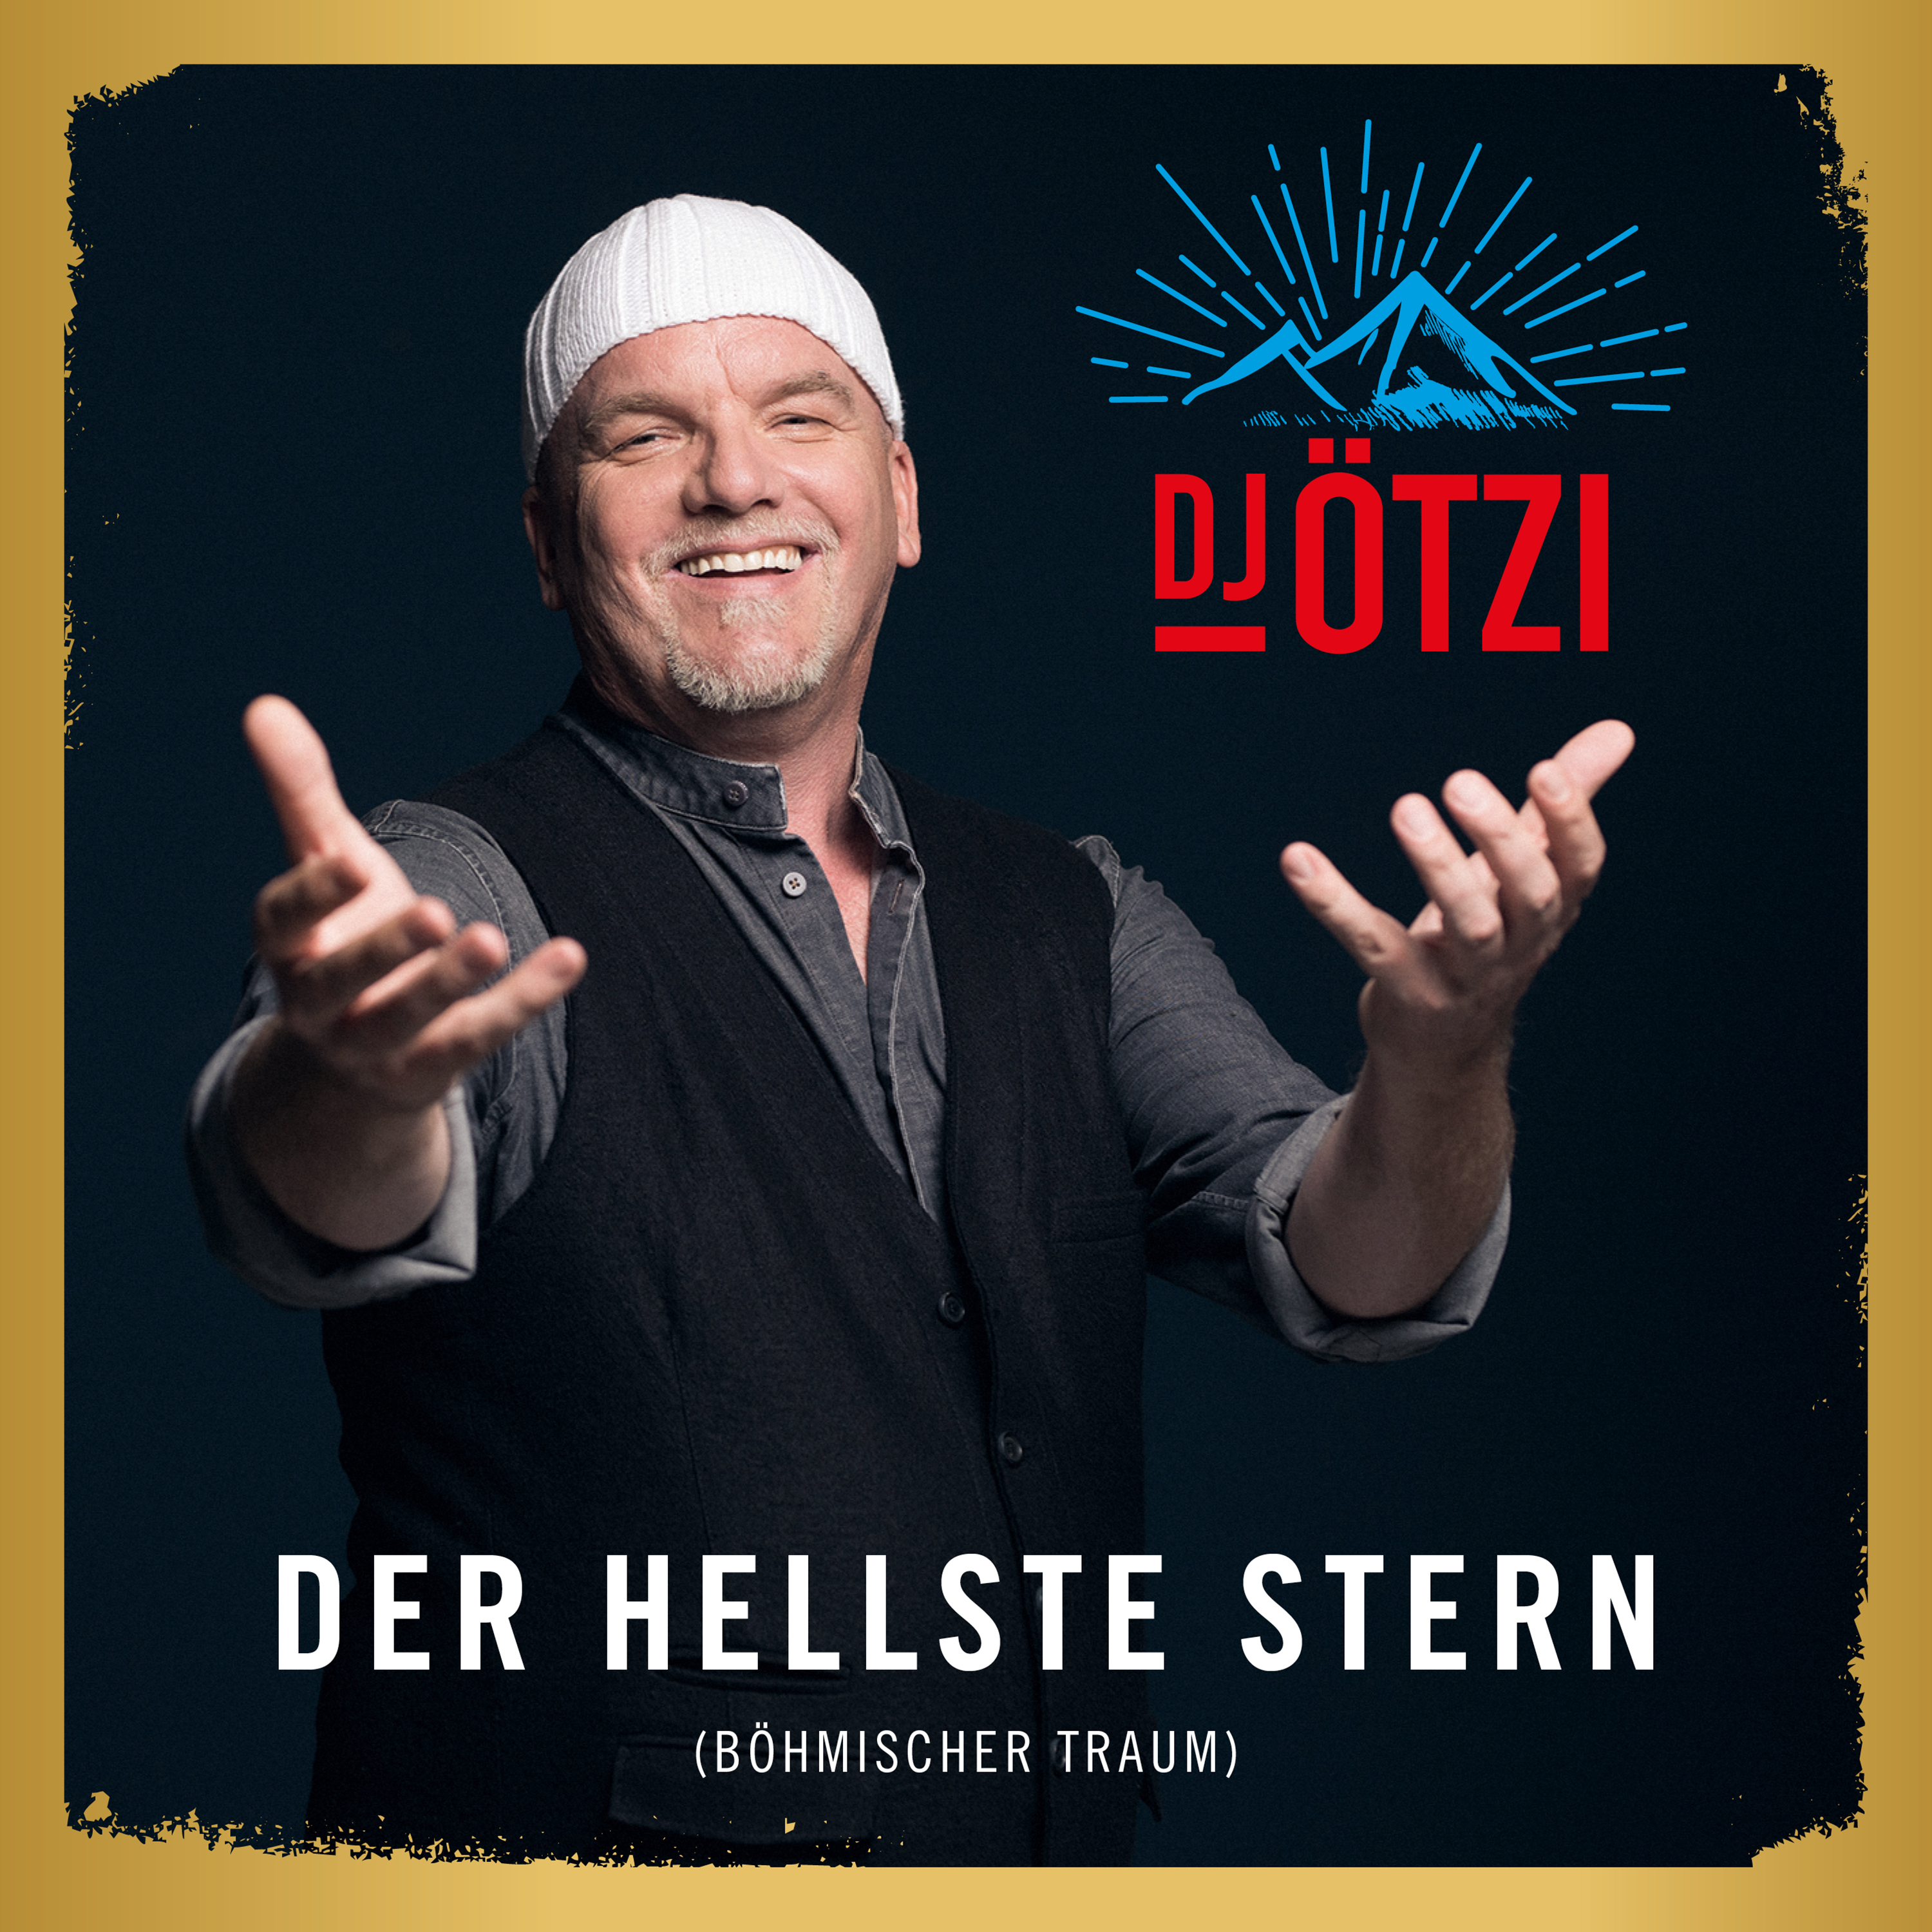 Dj Otzi Musik Der Hellste Stern Bohmischer Traum Single